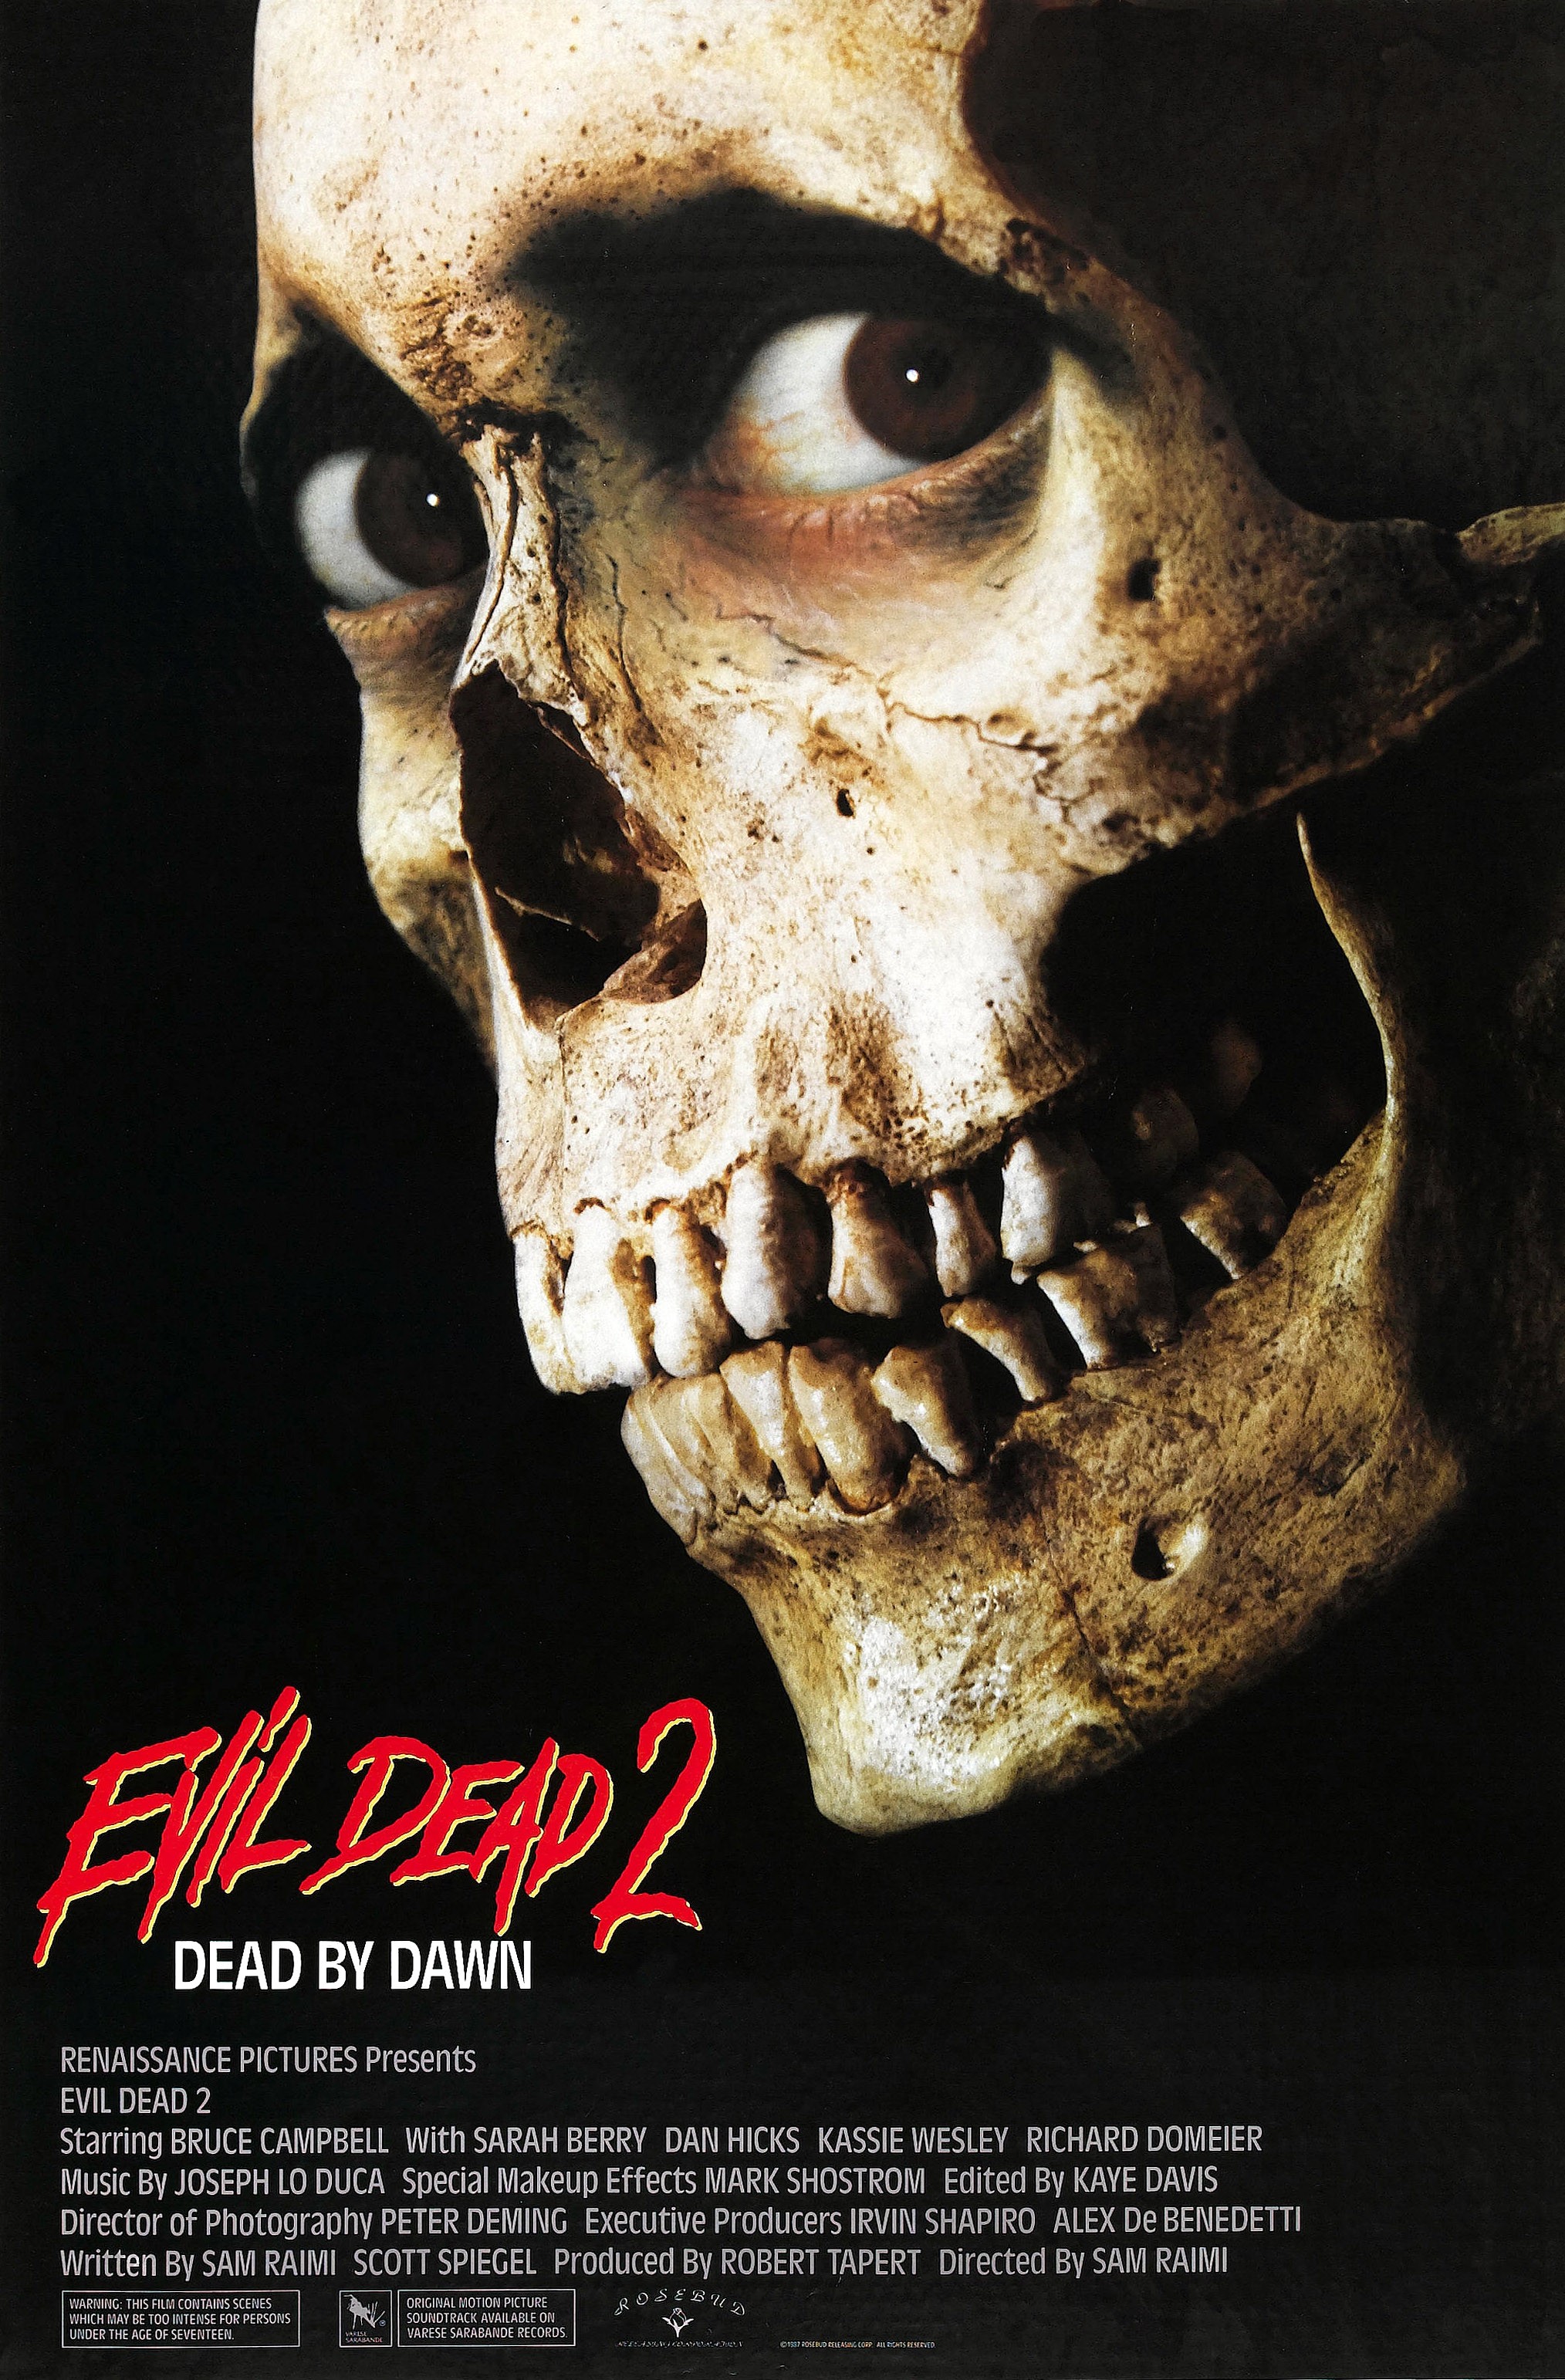 Watch The Evil Dead Full movie Online In HD